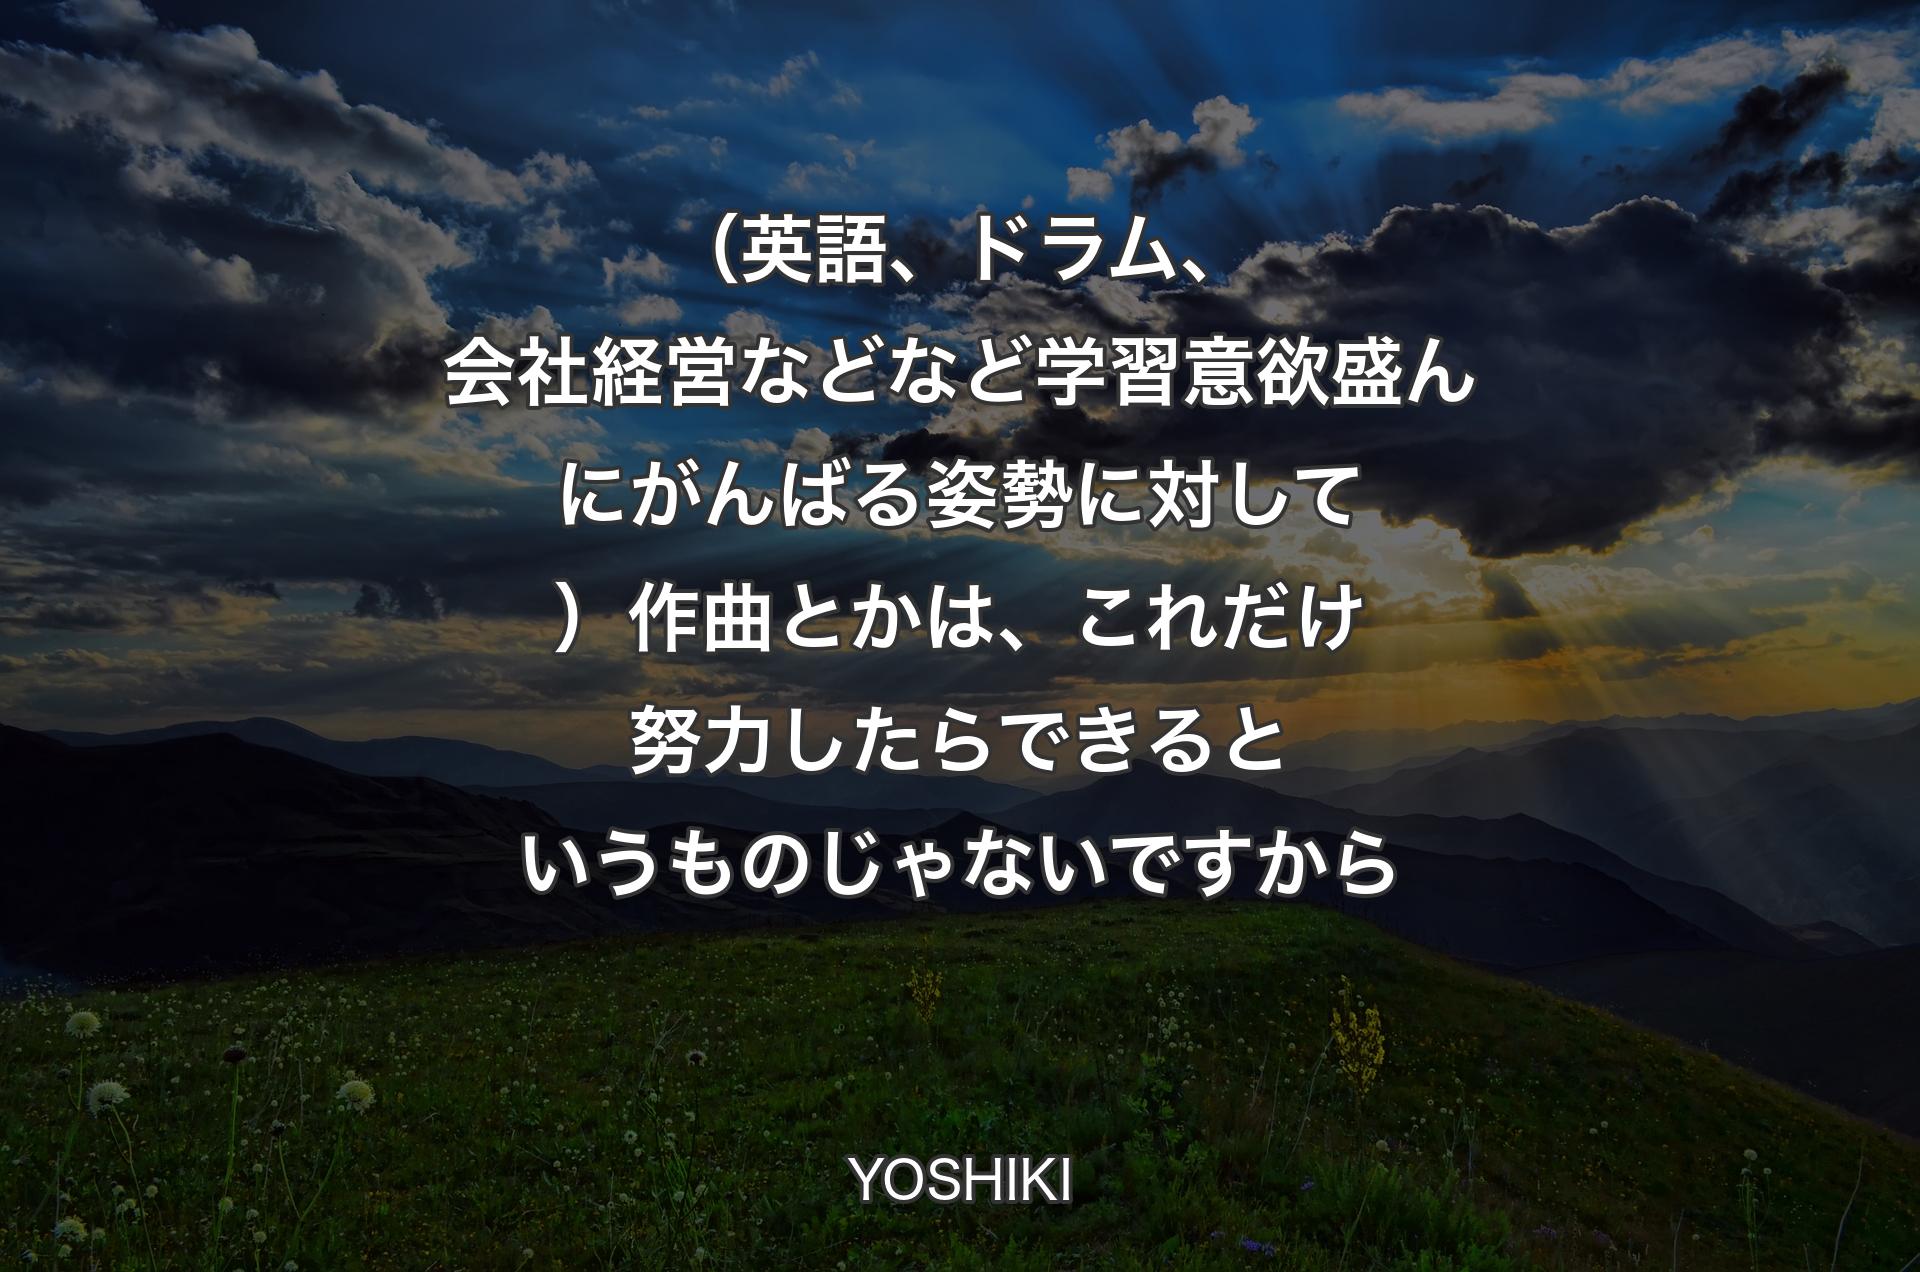 （英語、ドラム、会社経営などなど学習意欲盛んにがんばる姿勢に対して）作曲とかは、これだけ努力したらできるというものじゃないですから - YOSHIKI